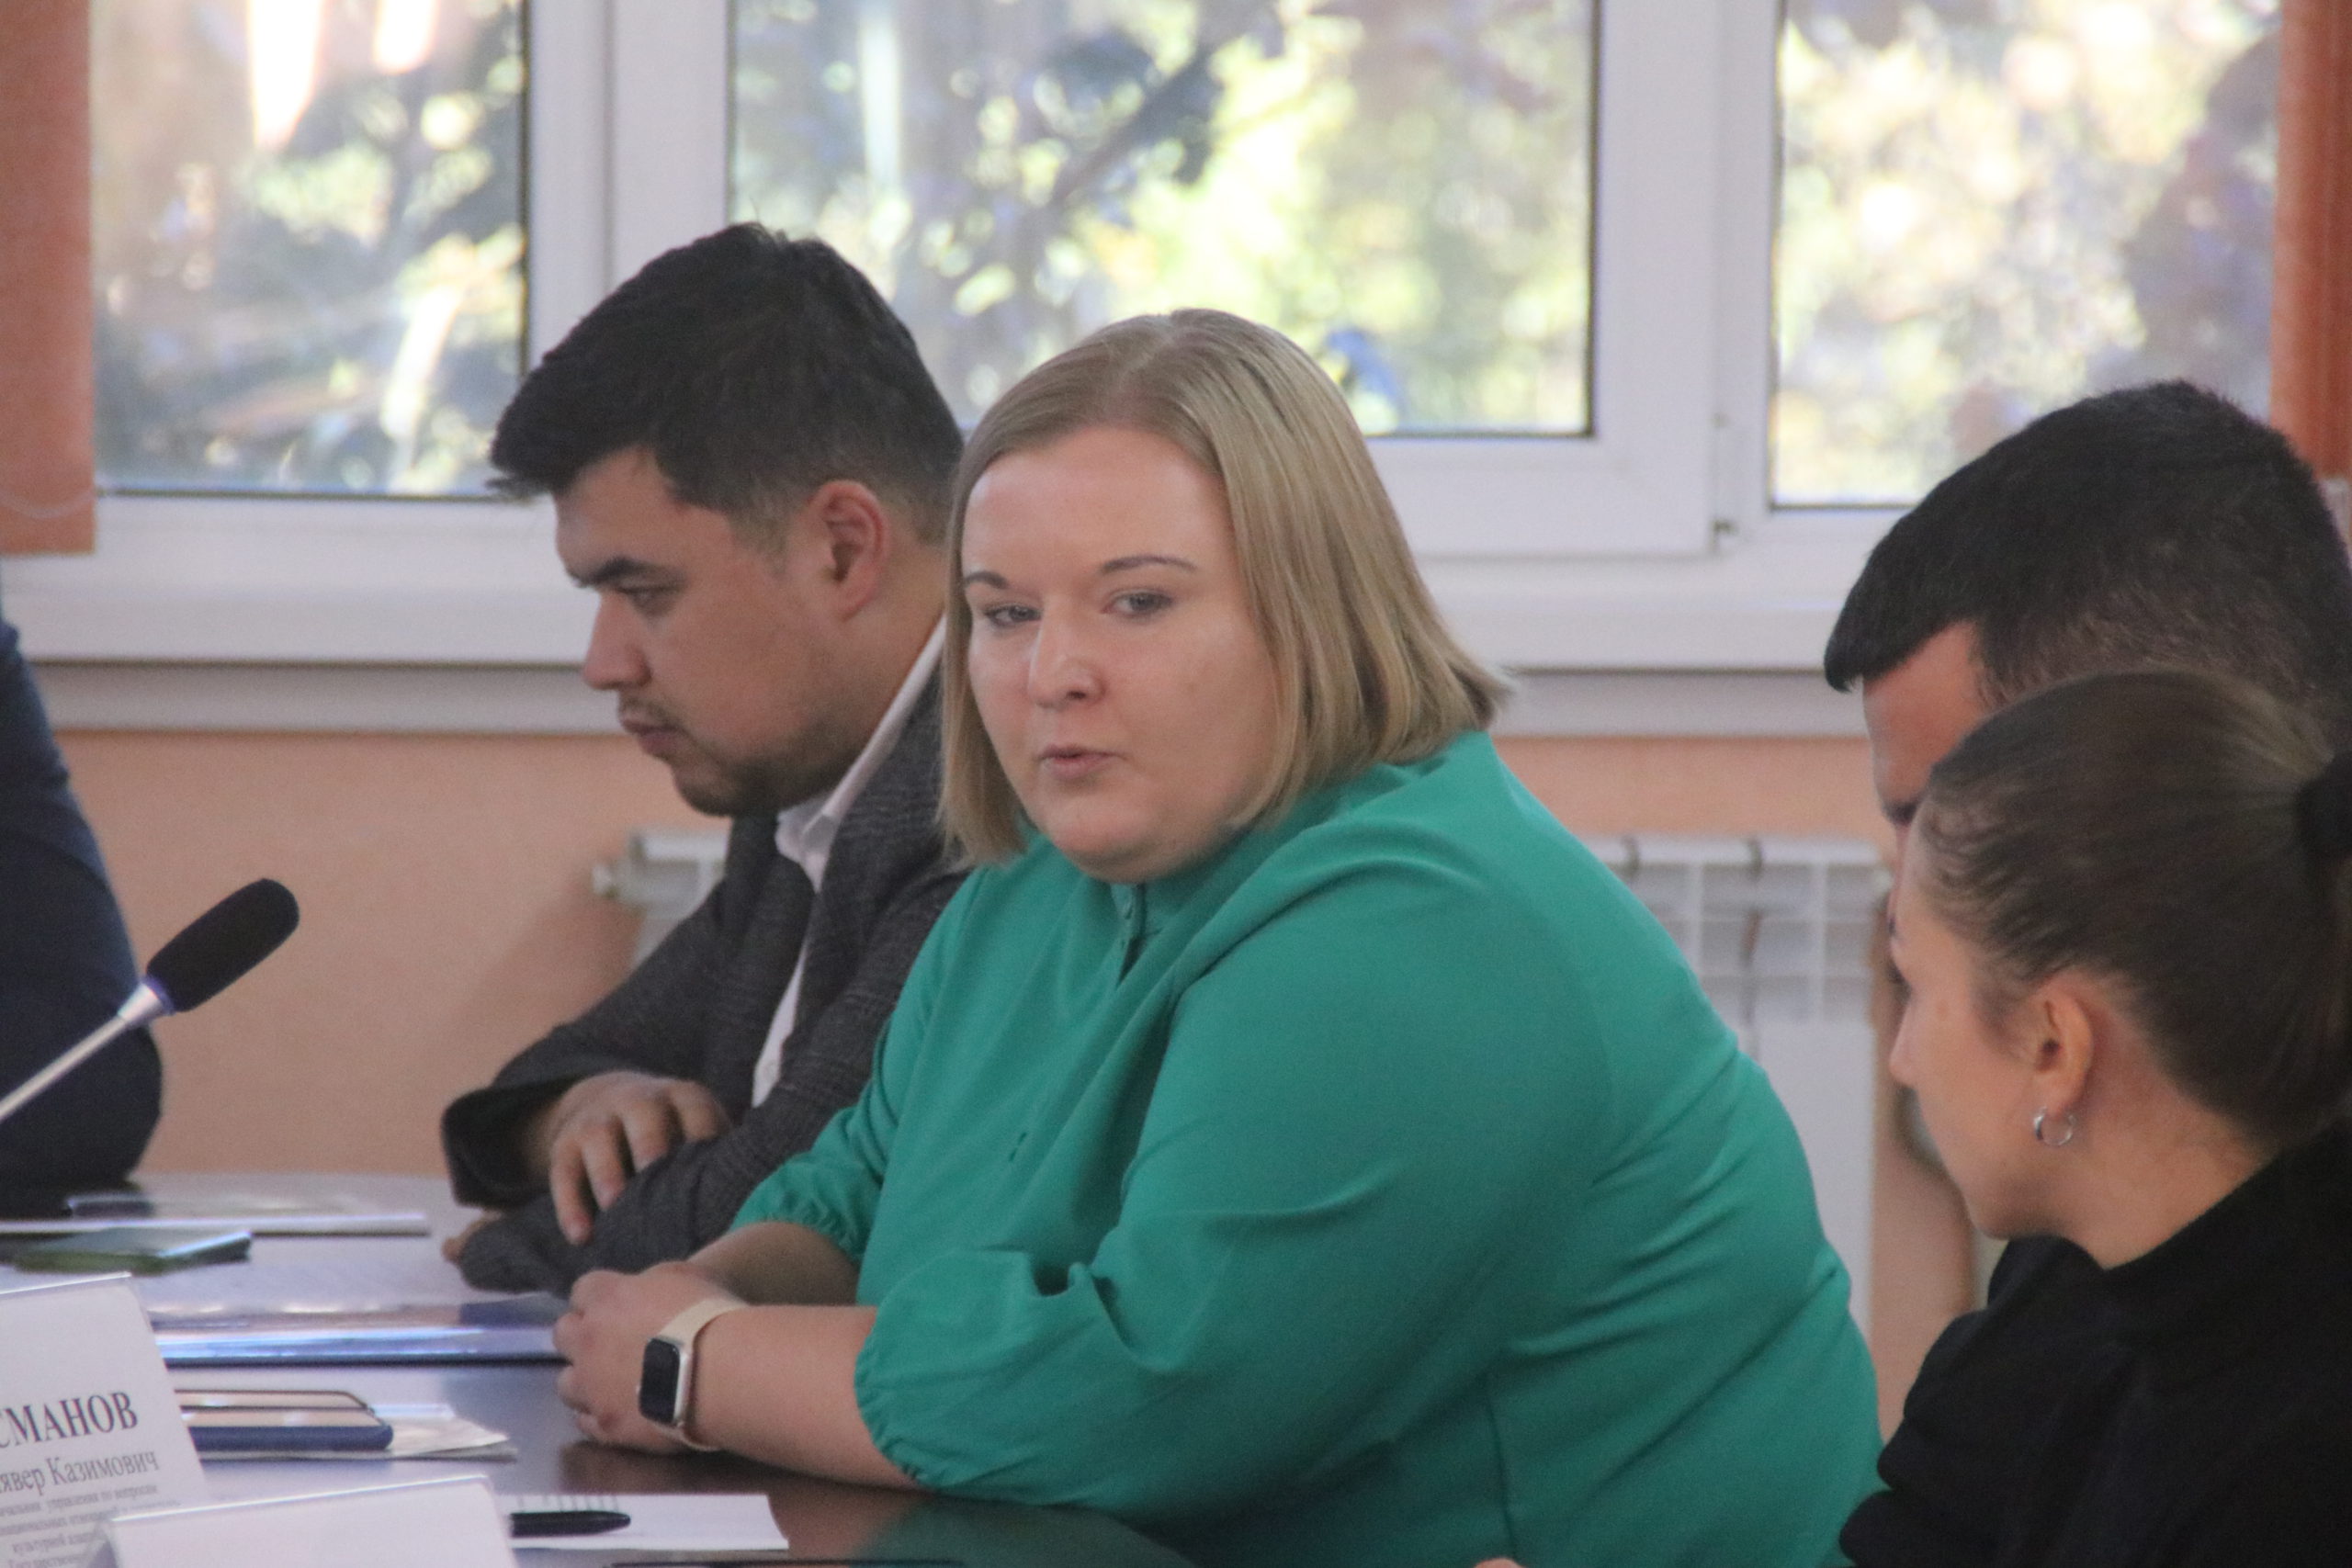 Общественный совет при Госкомнаце Крыма предложил выработать единую информационную концепцию освещения сферы межнациональных отношений